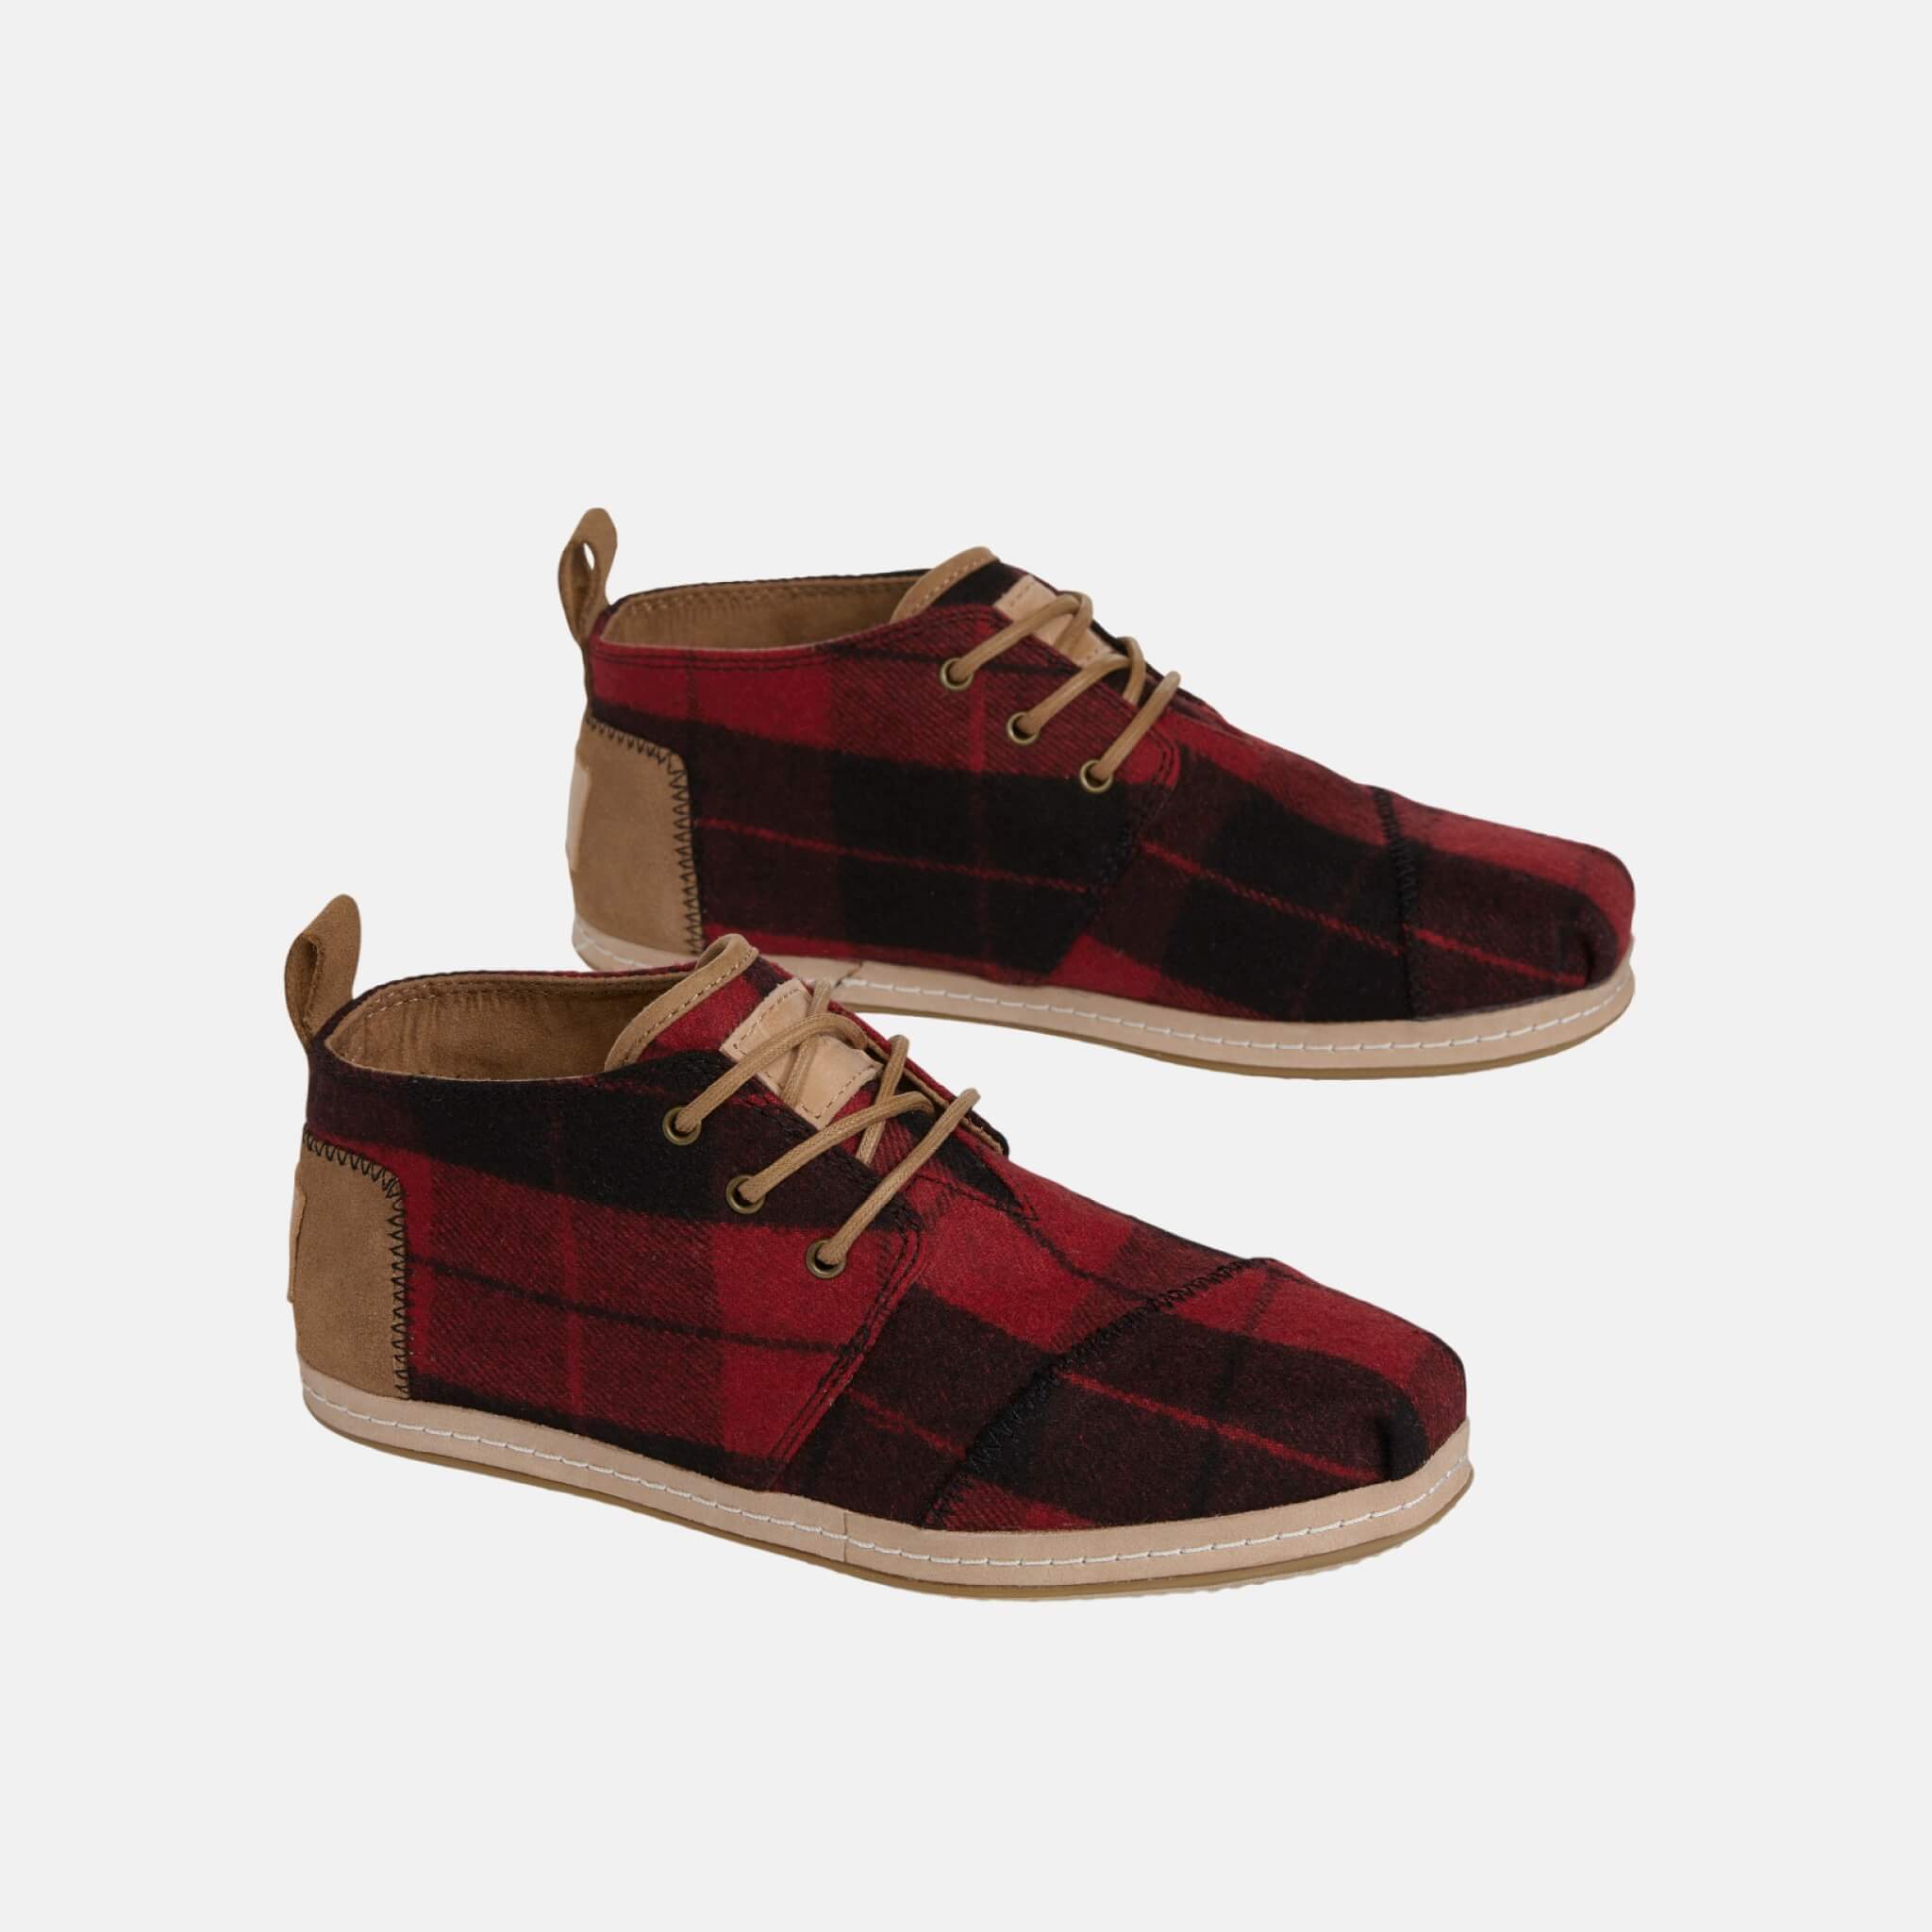 Dámske červené členkové topánky TOMS Plaid Venice Collection